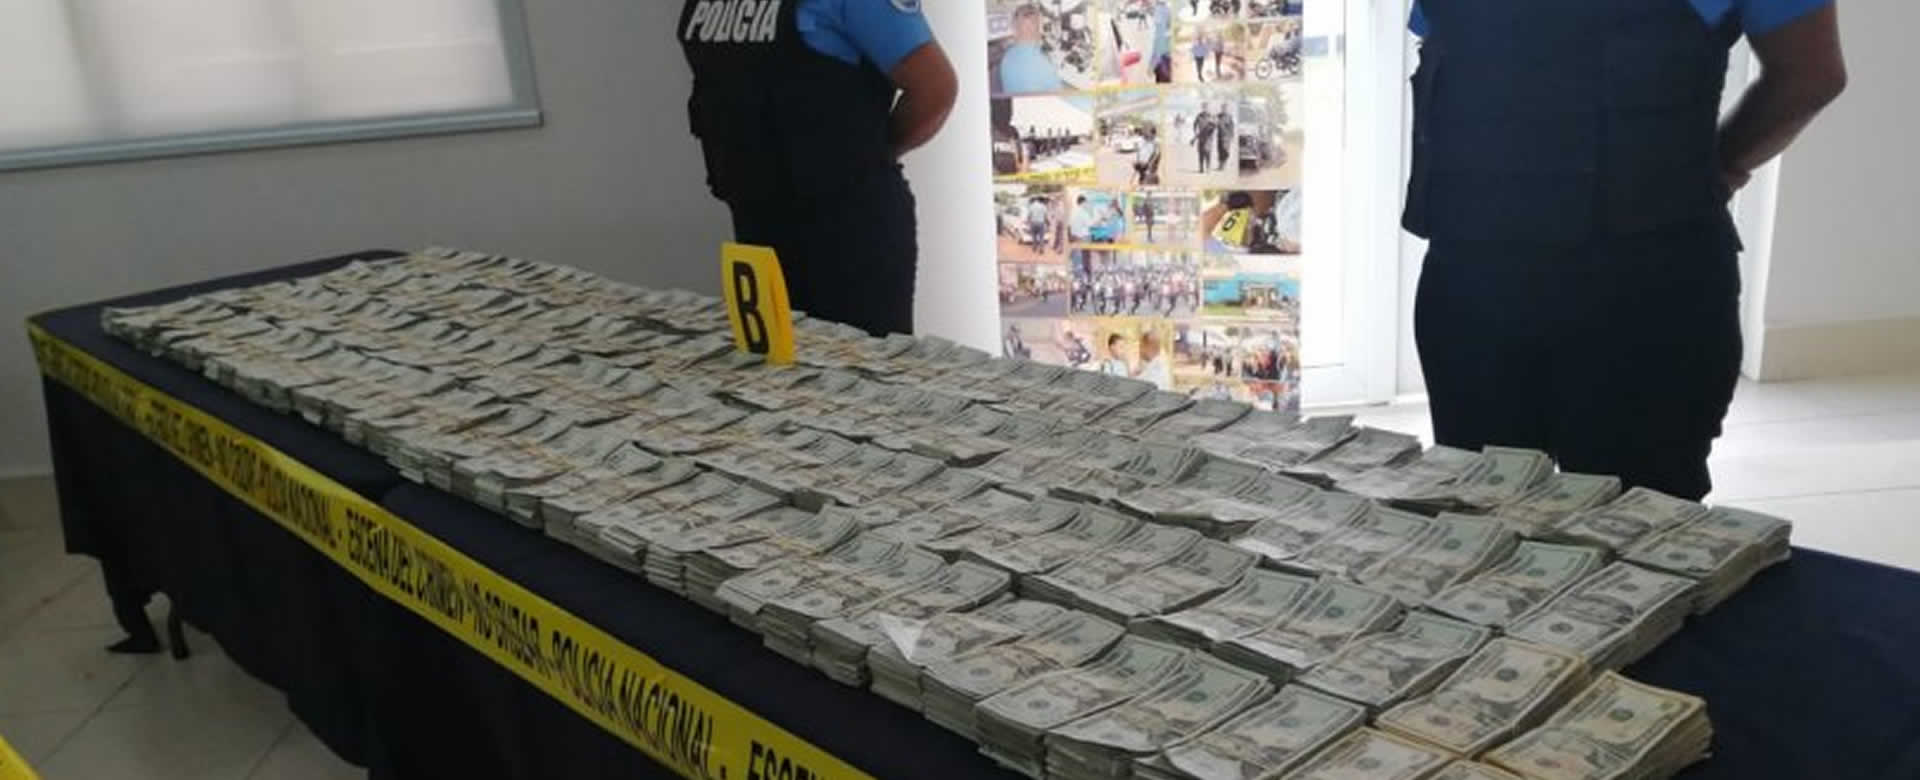 Policía Nacional incauta más de 70 mil dólares a guatemalteco